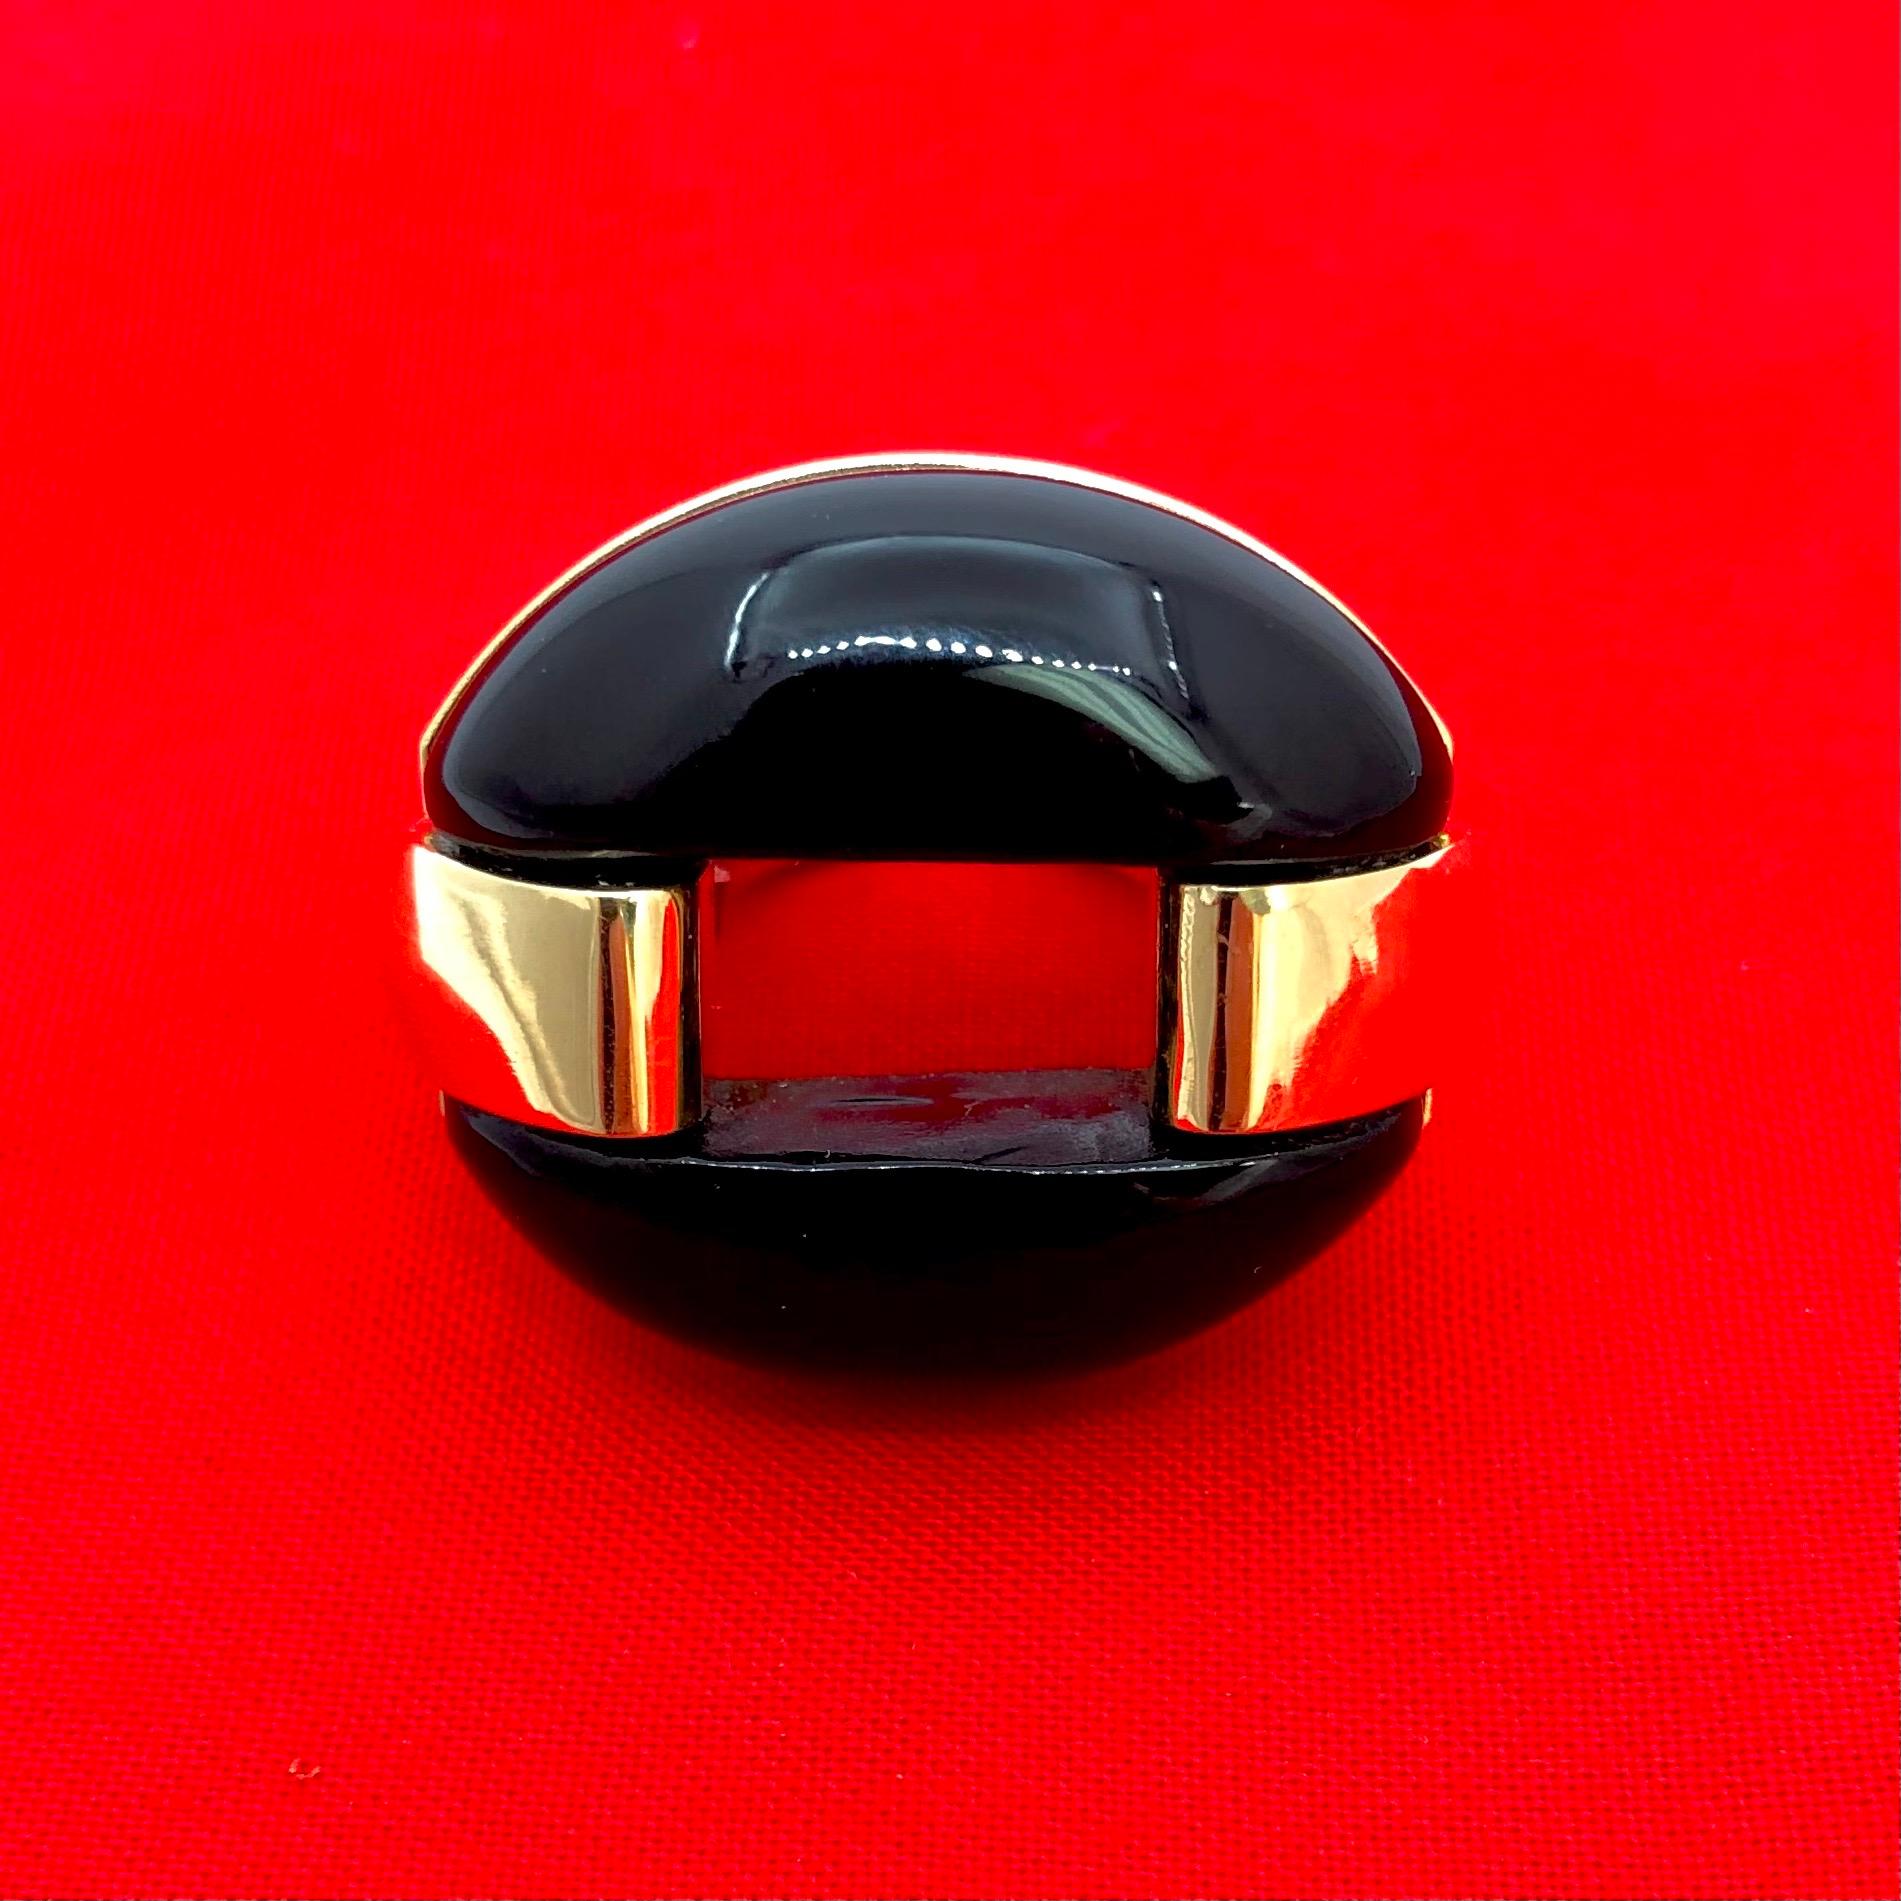 Cette bague frappante et percutante est fabriquée en or jaune 18 carats et surmontée d'un ovale d'onyx noir taillé sur mesure, mesurant 1,5 cm sur 1,5 cm. Les élégantes épaules de l'anneau entourent l'ovale d'onyx de chaque côté, créant ainsi un